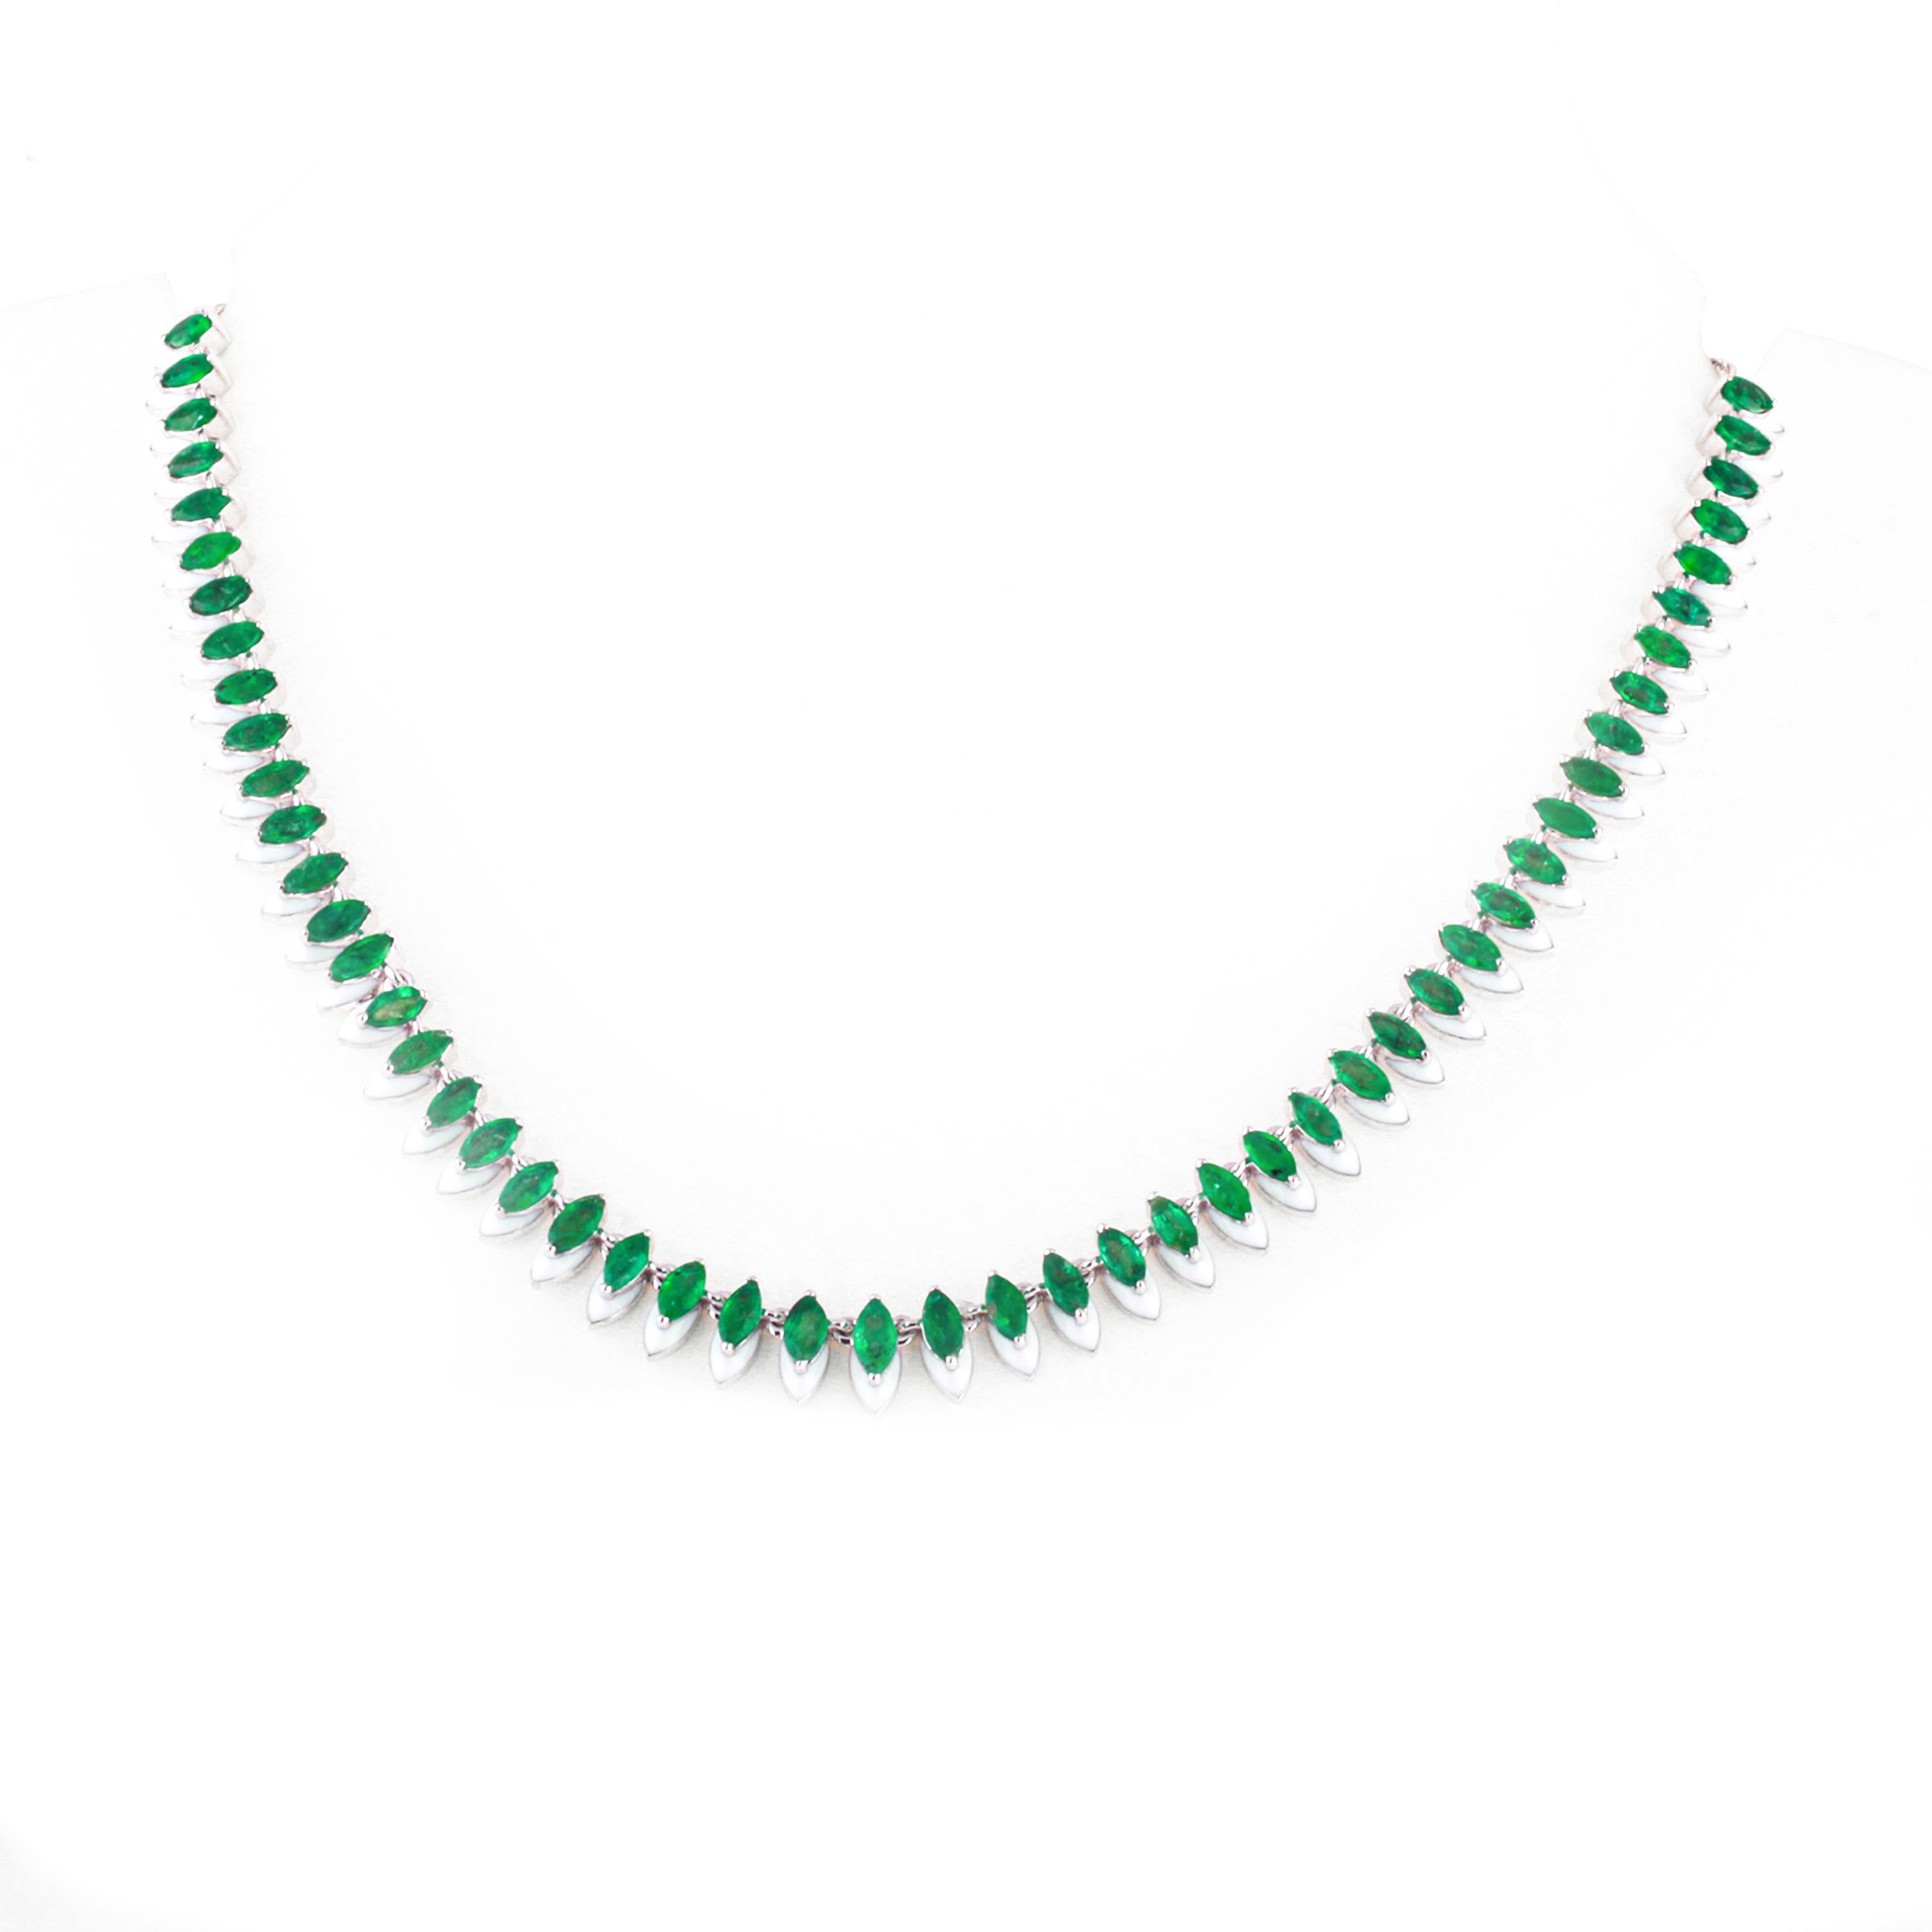 Marquise Form 0,20 Karat Smaragde in einer Serie, in Kombination mit weißen  oder dämmerungsblauer Emaille. Dieses Halsband ist aus 18 Karat Weißgold gefertigt und hat einen selbst einstellbaren Kugelkettenmechanismus. 